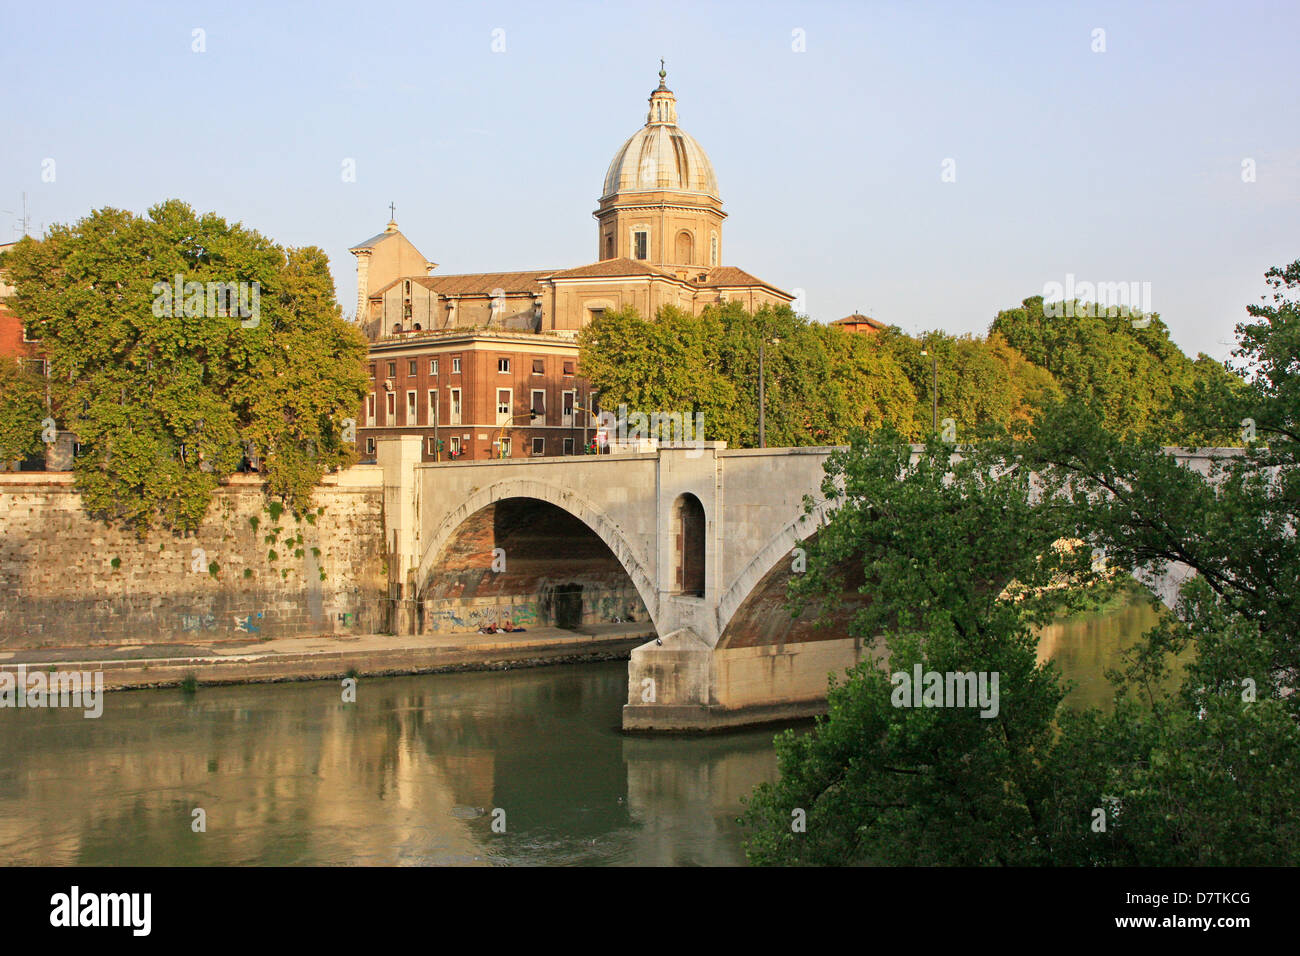 City scene, Rome, Italy Stock Photo